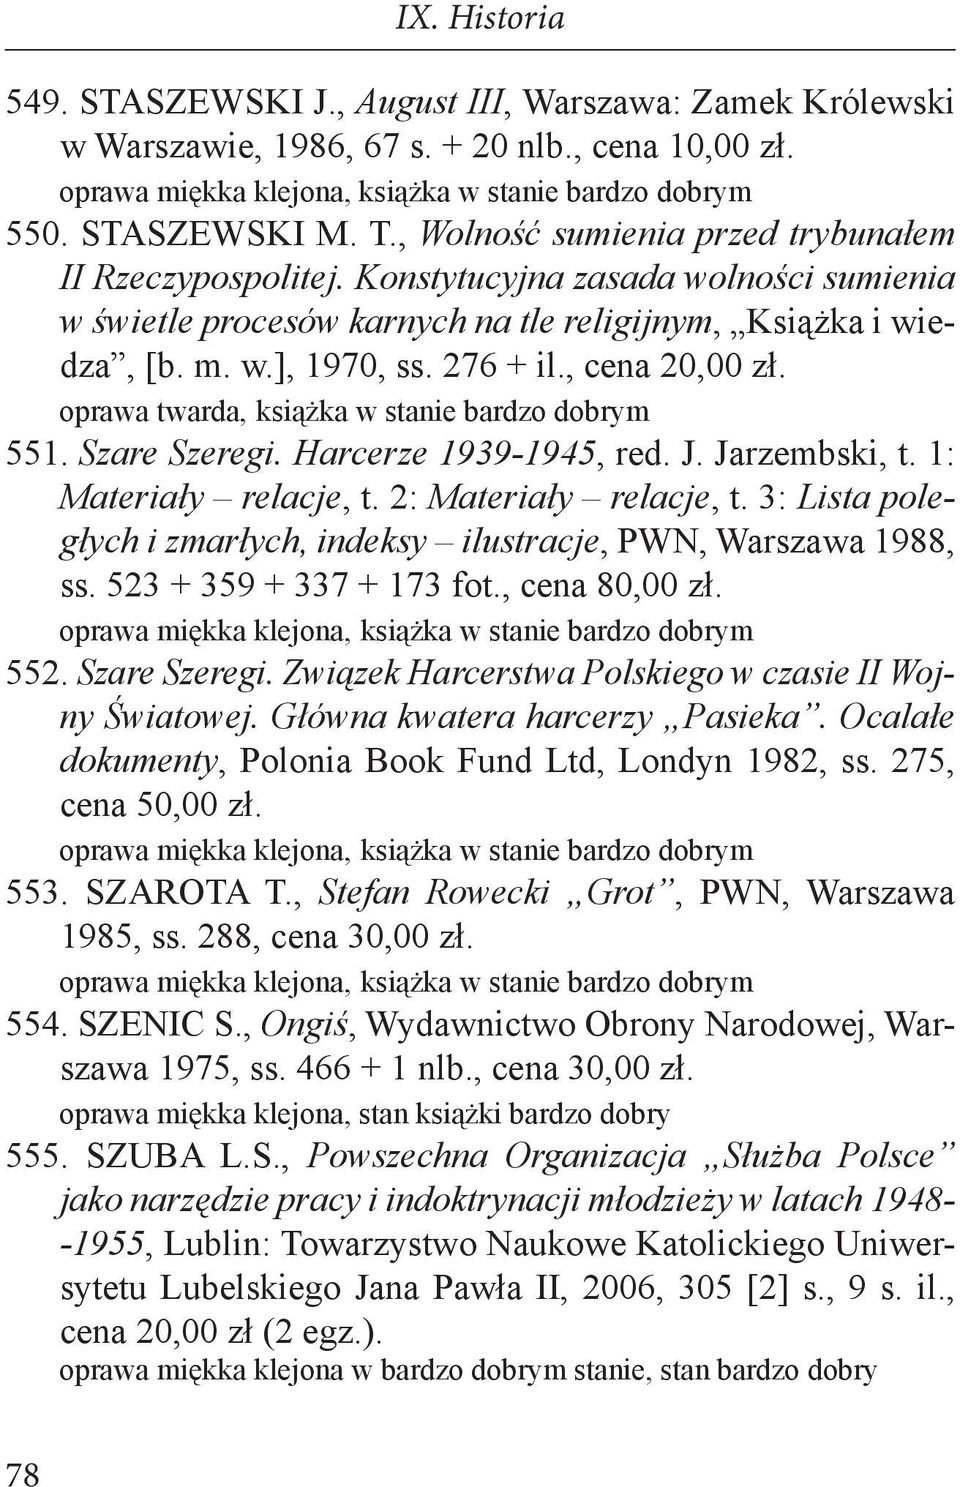 Jarzembski, t. 1: Materiały relacje, t. 2: Materiały relacje, t. 3: Lista poległych i zmarłych, indeksy ilustracje, PWN, Warszawa 1988, ss. 523 + 359 + 337 + 173 fot., cena 80,00 zł. 552.